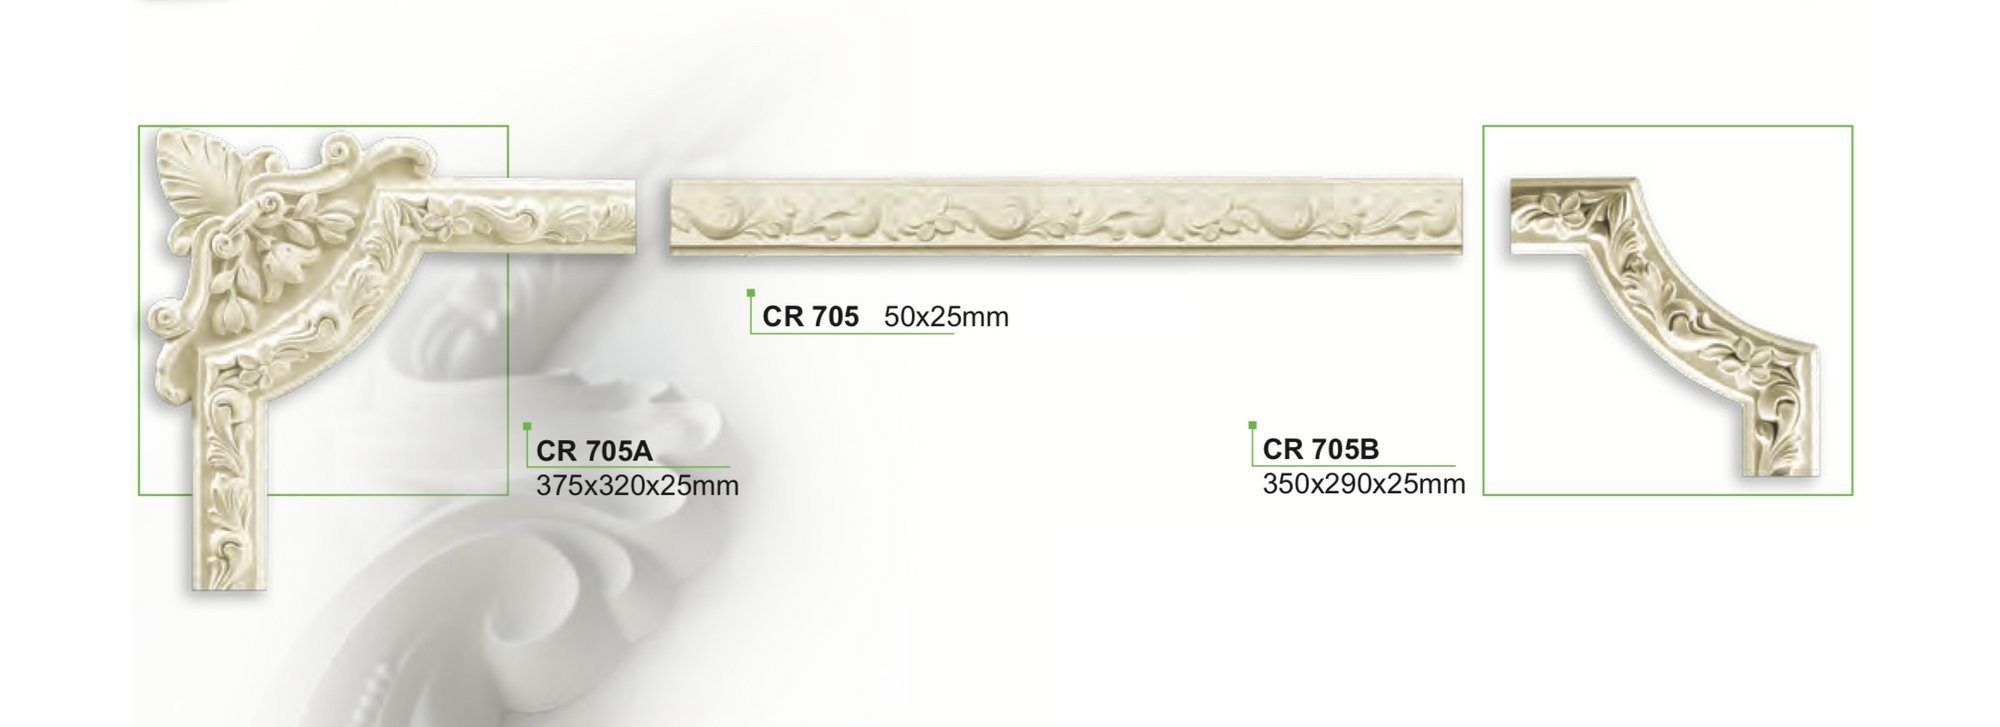 aus hart CR705 Meter vorgrundiert PU / CR705, Stuckleiste 50x25mm und weißes stoßfest, Wandleiste 2 & Decor Deckenumrandung Flachleiste, - - Wand- Grand Zierprofil